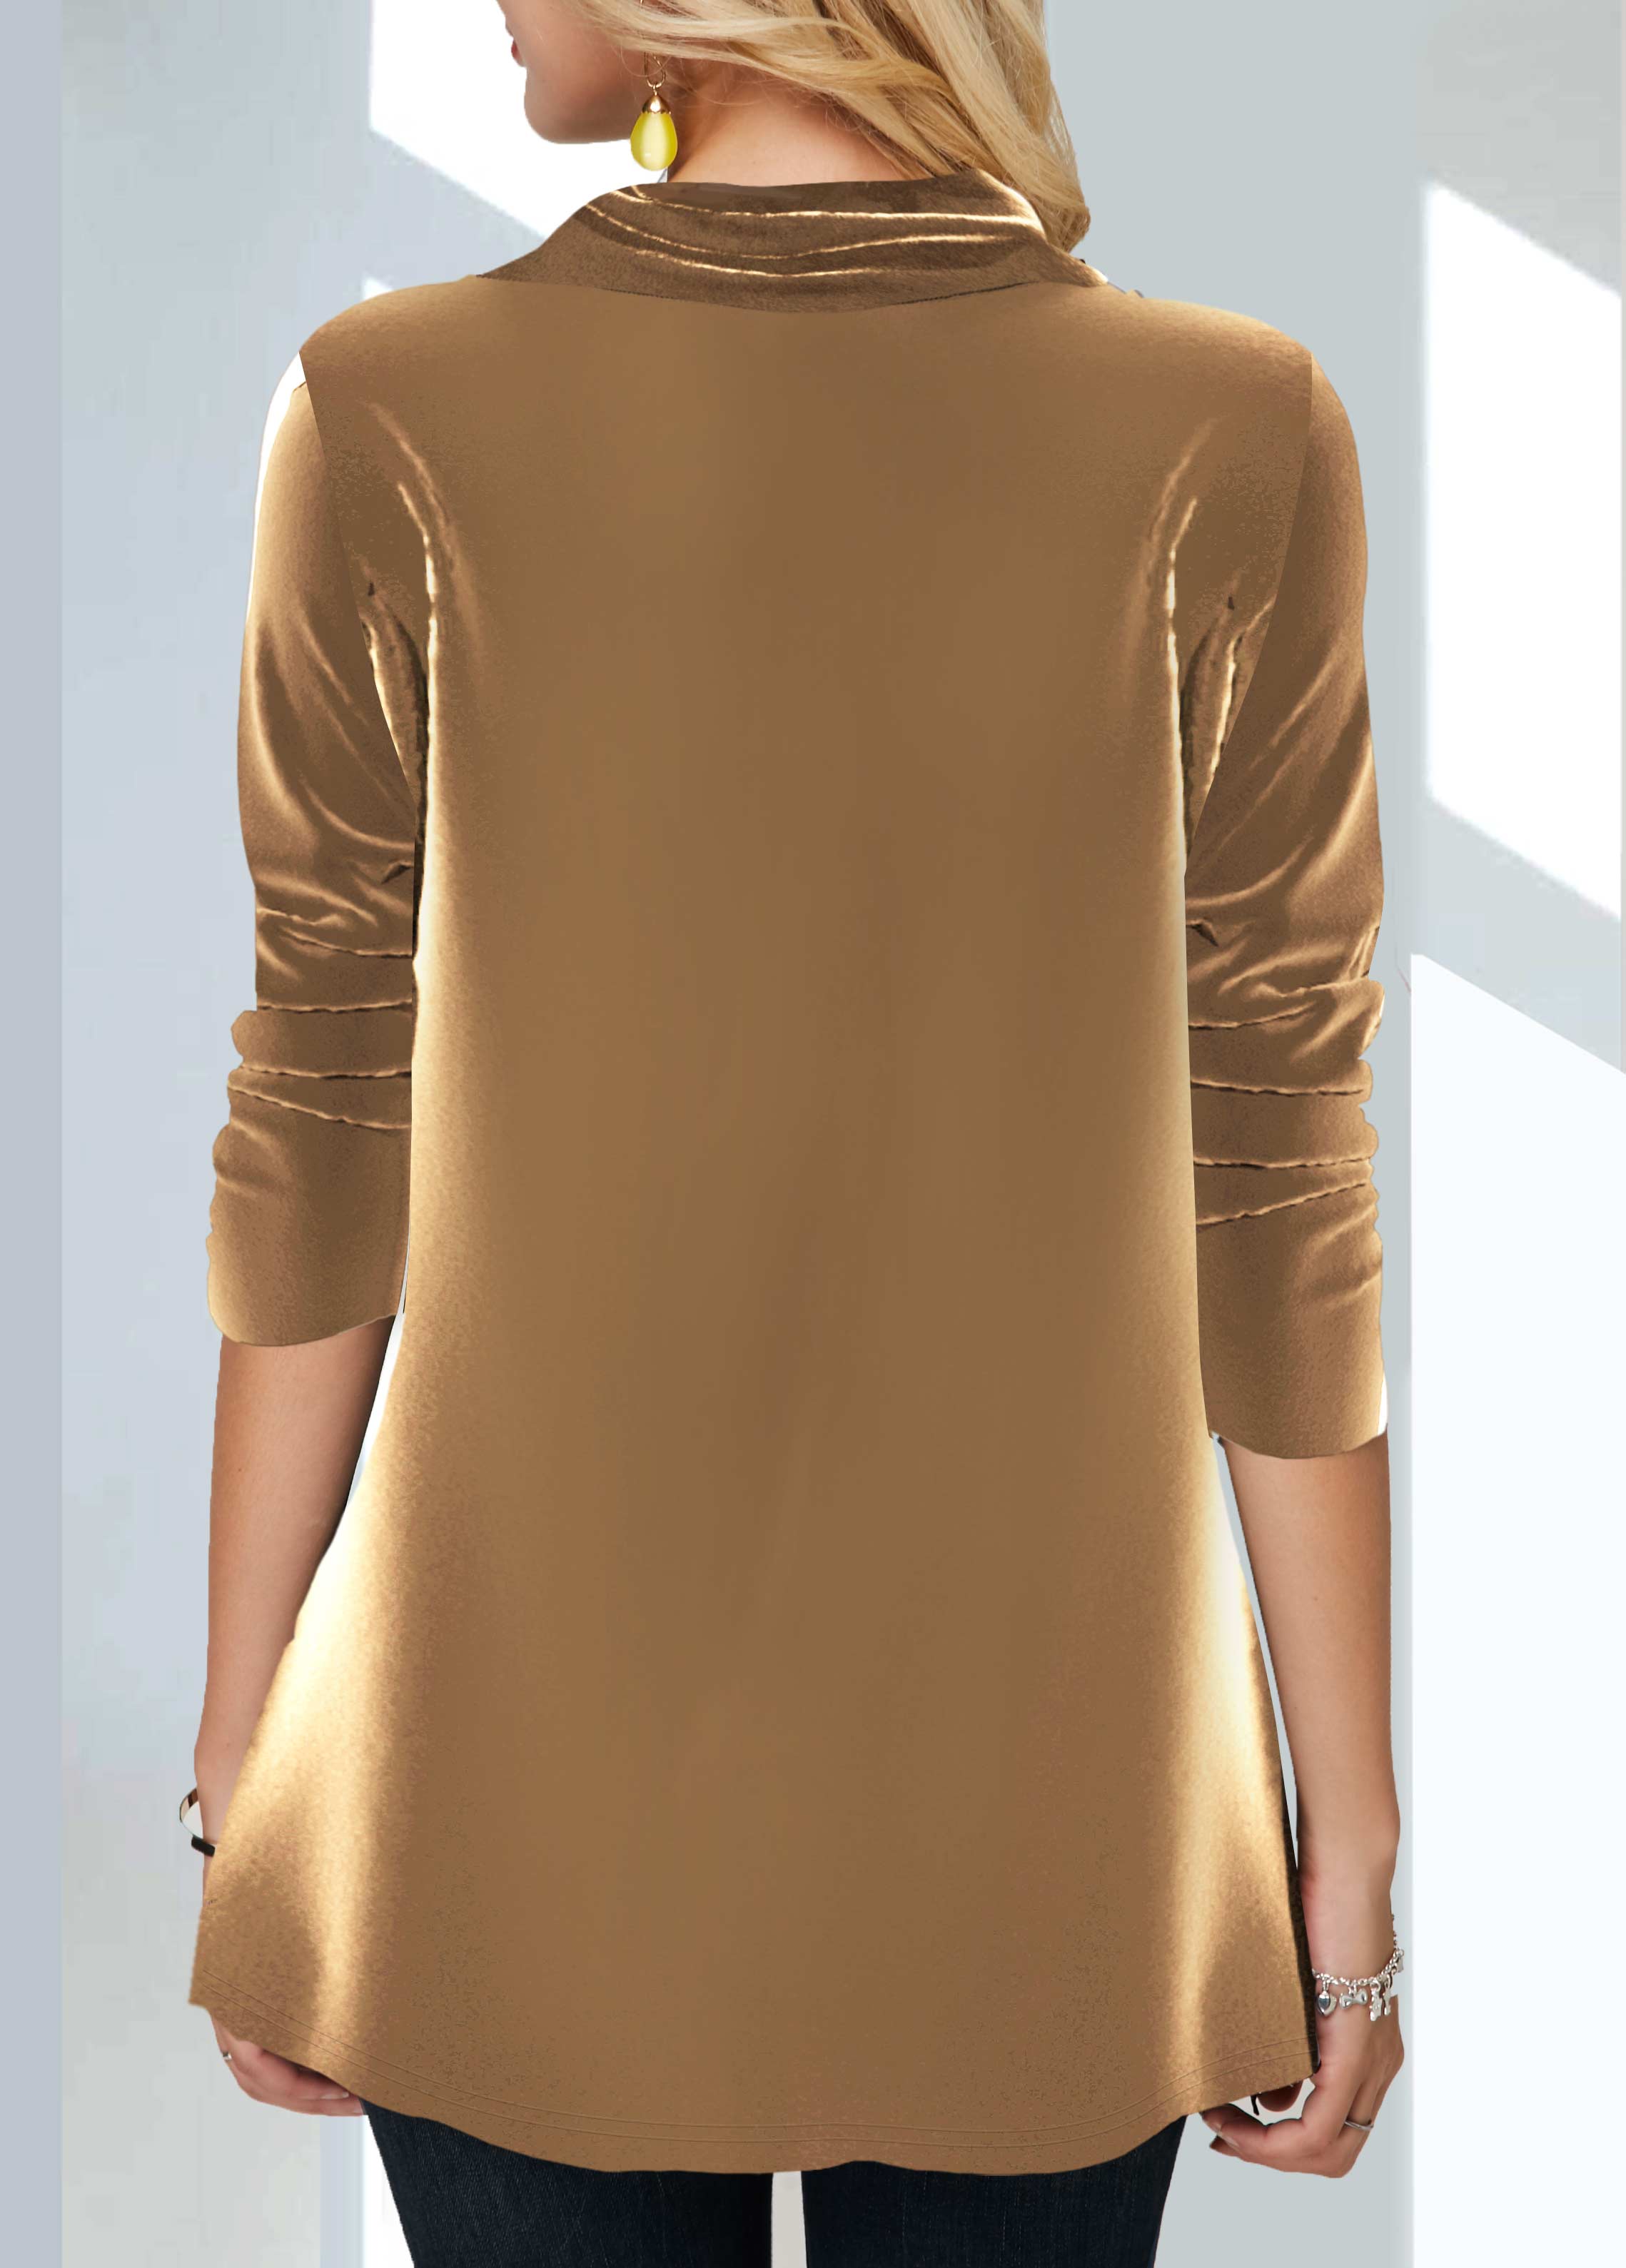 Velvet Stitching Sequin Gold Brown Sweatshirt